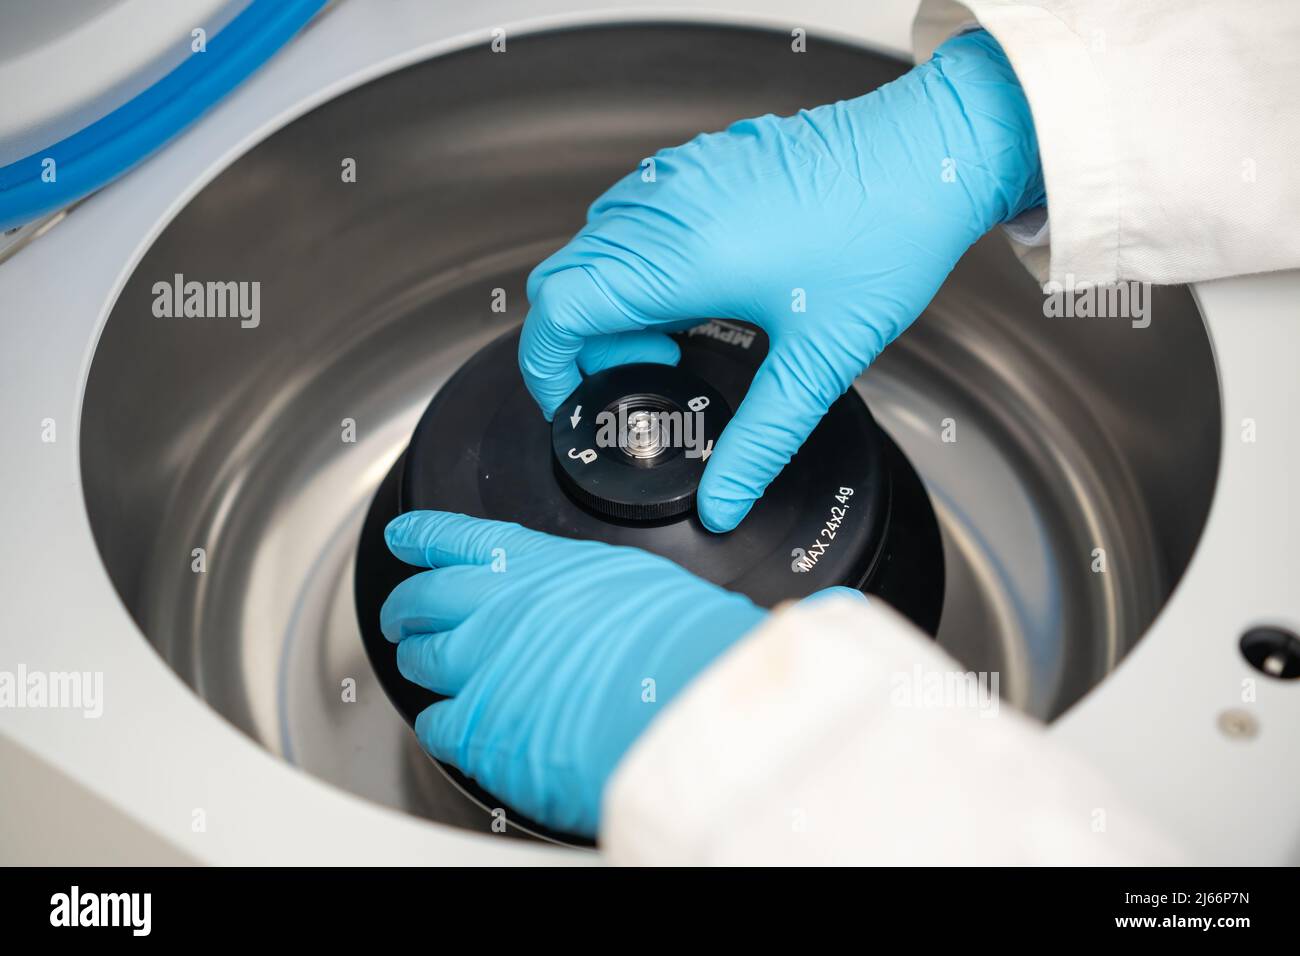 Eine Laborantin mit Gummihandschuhen befüllt eine Zentrifuge und schließt die Kappe. DNA-Test oder onglogy Marker Tests Konzept. Stockfoto